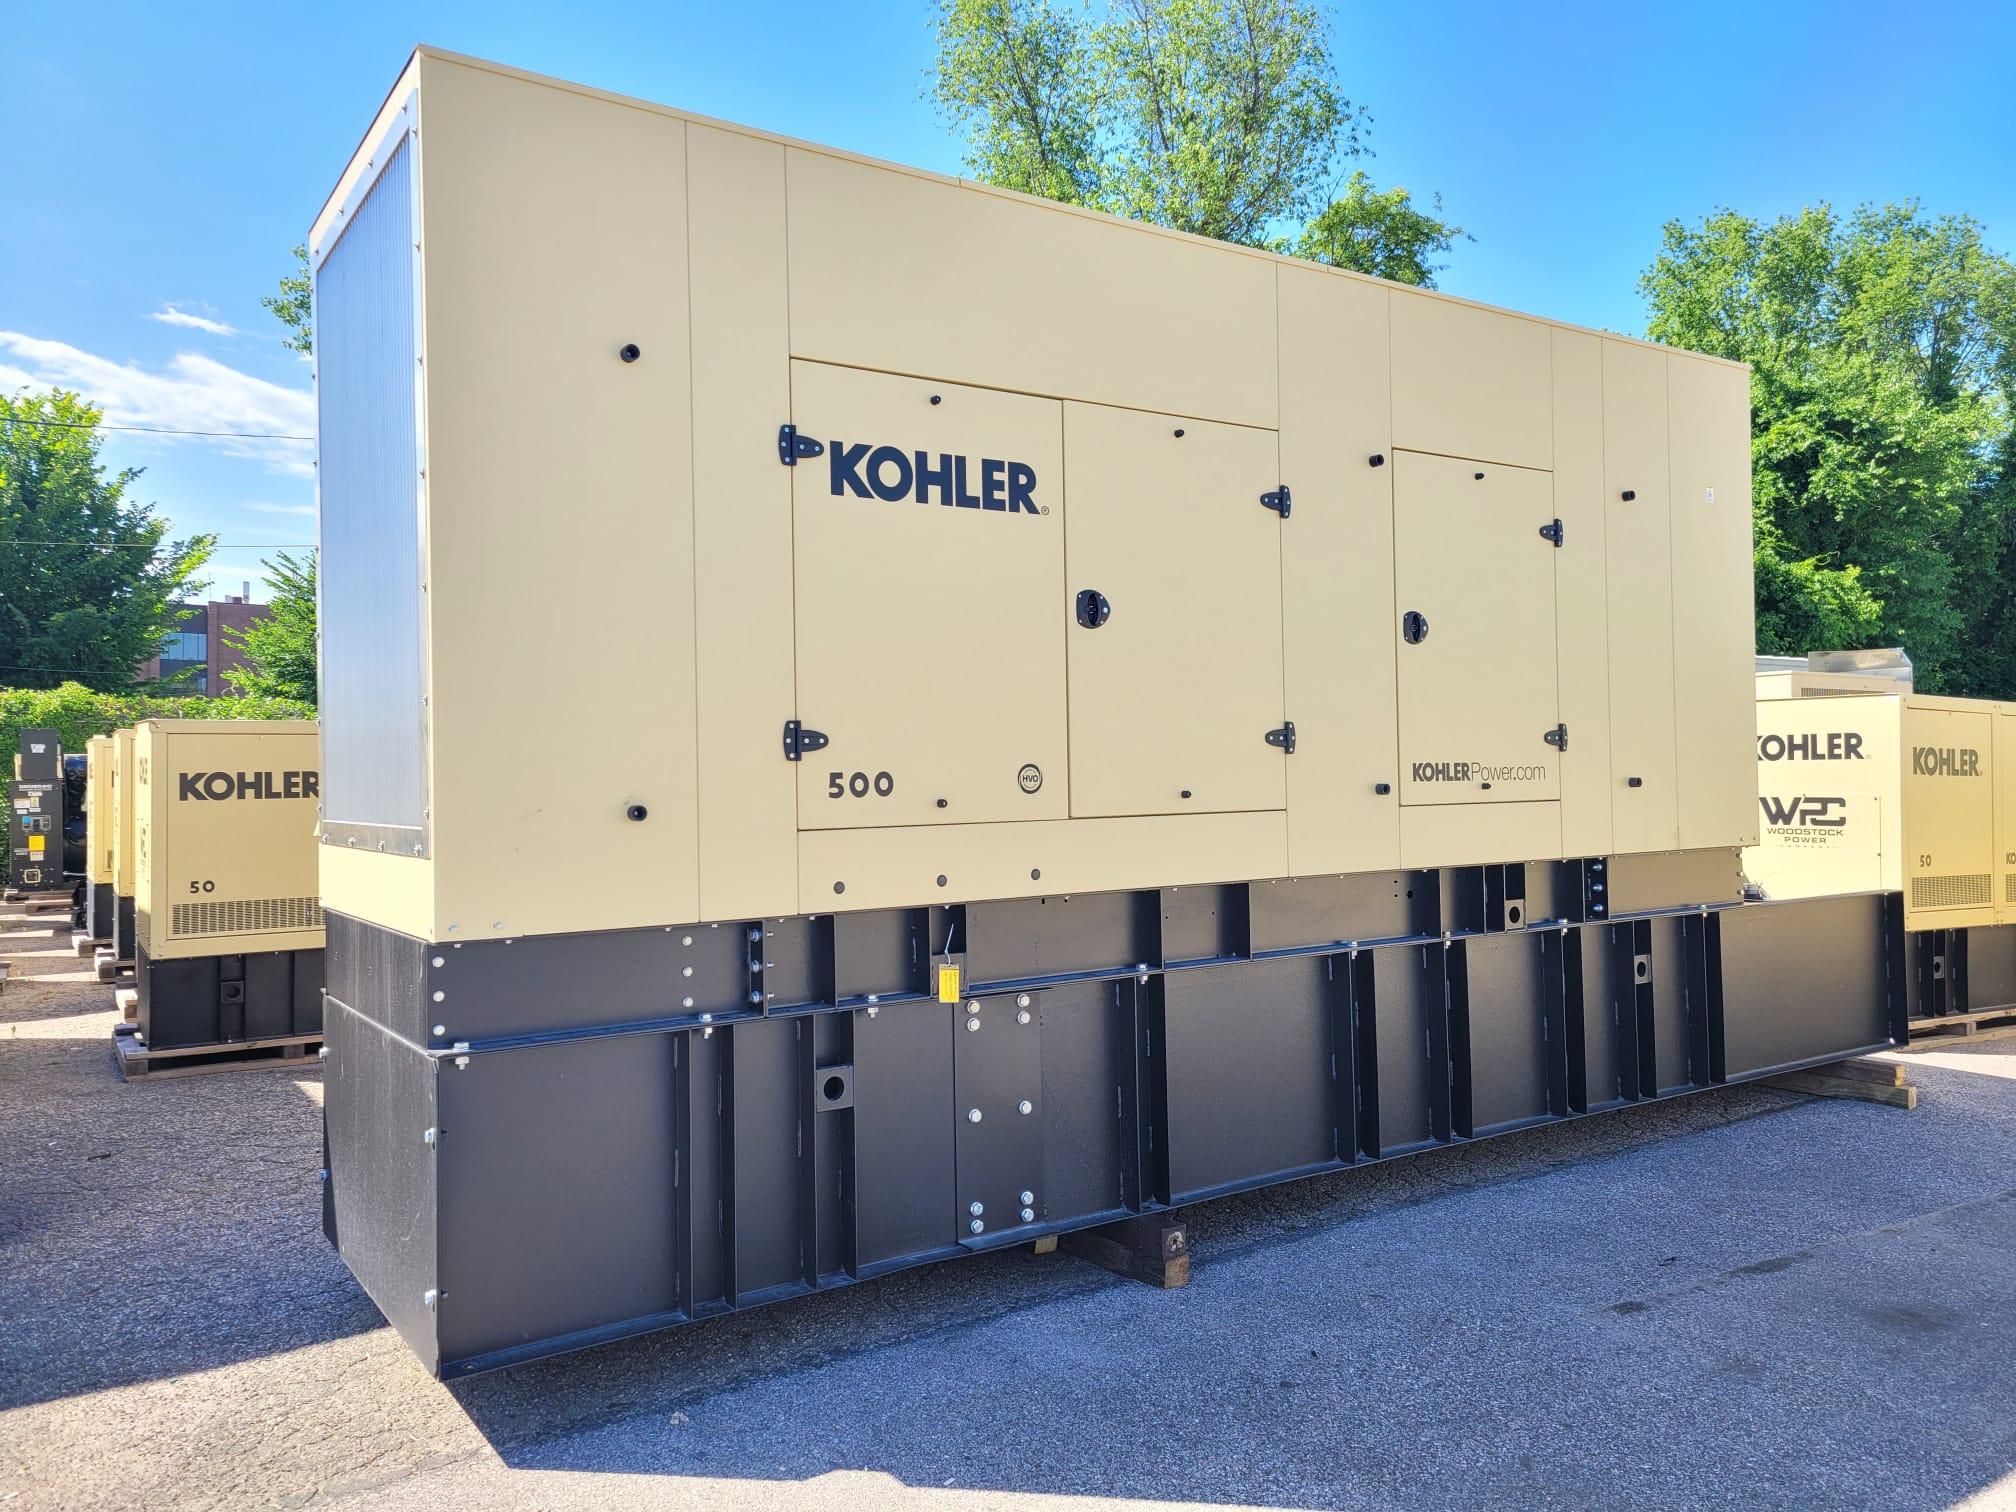 New 500 kW Kohler 500REOZJC Diesel Generator – Steel sound enclosure – EPA Tier 2